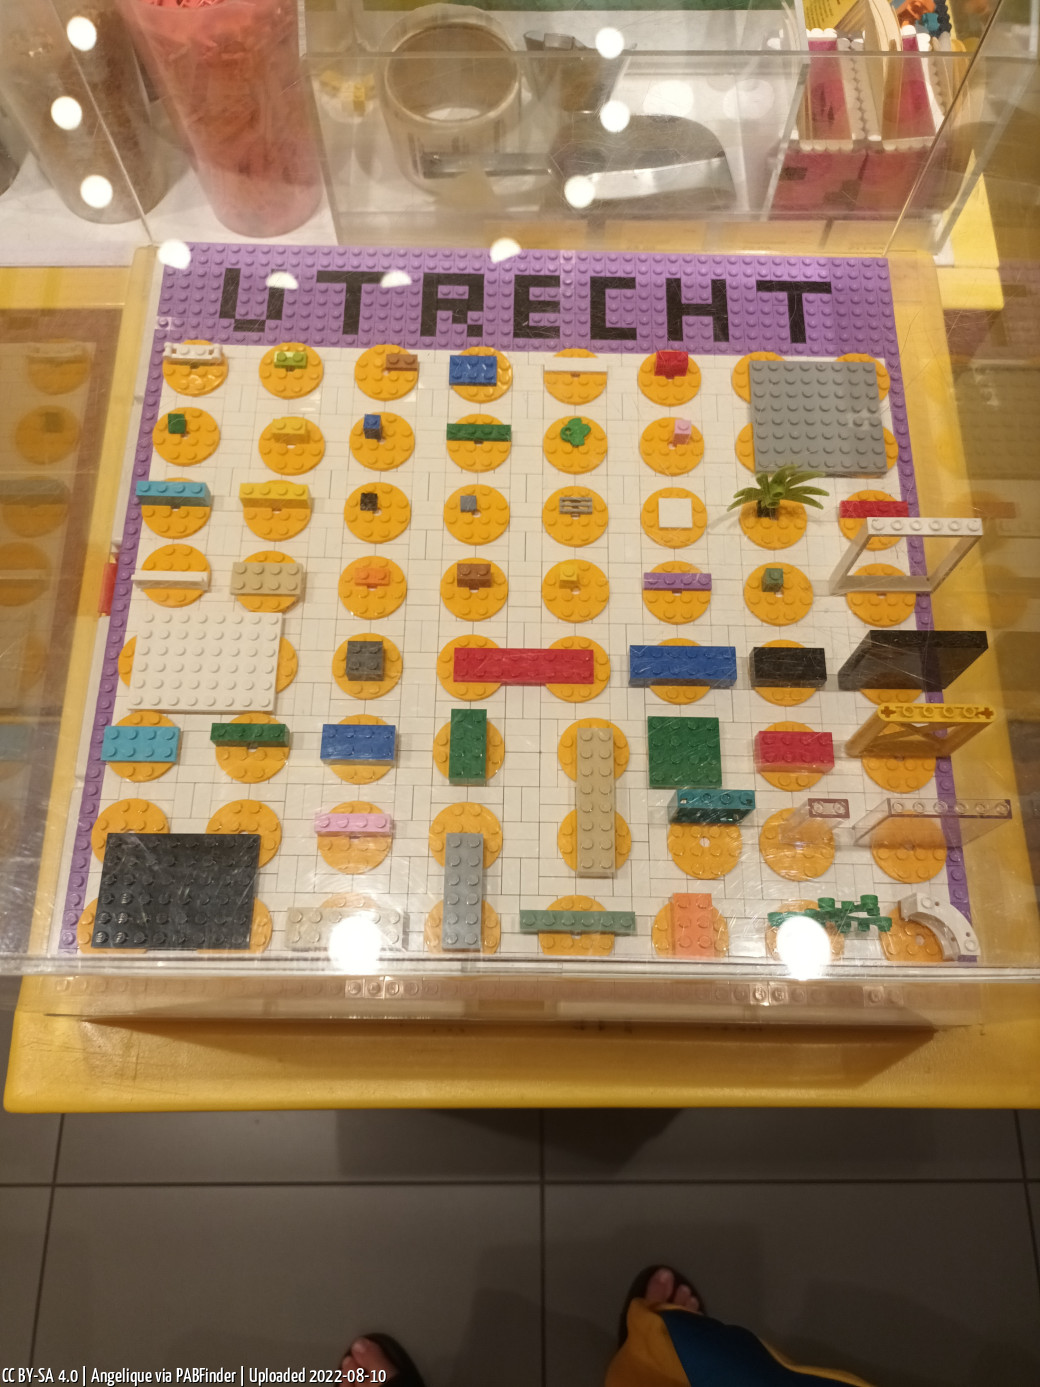 Pick a Brick Utrecht (Angelique, 8/10/22, 2:20:51 PM)